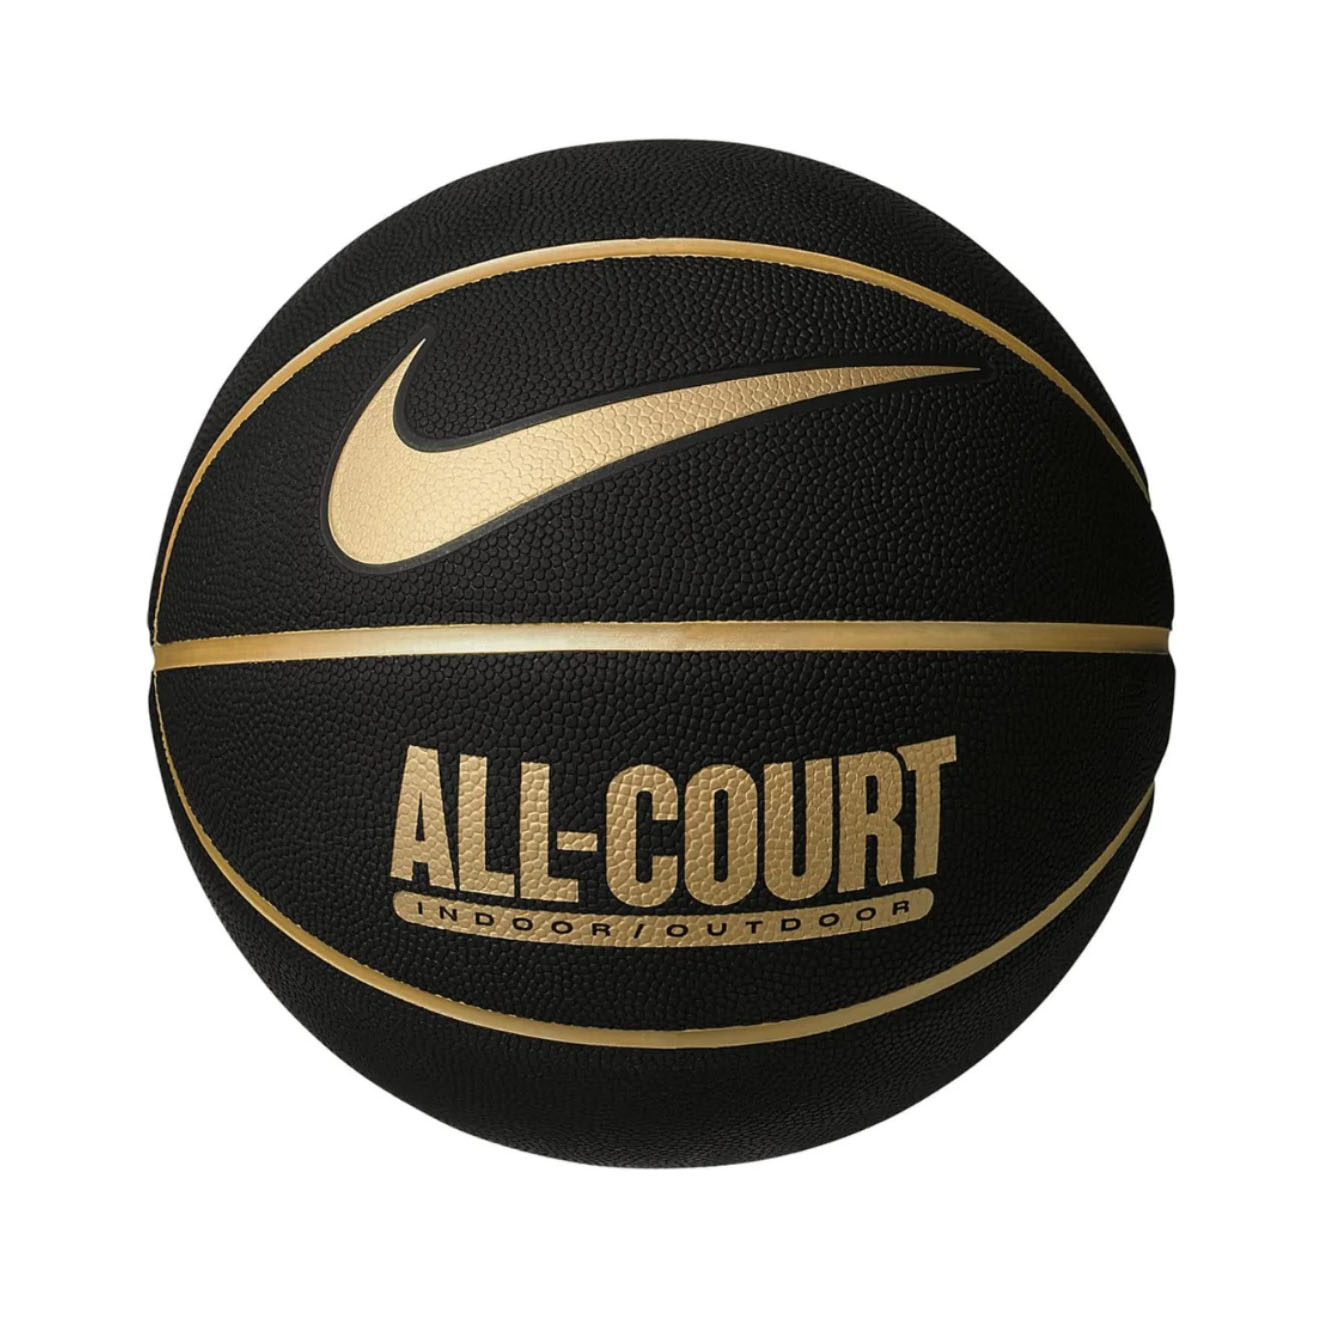 Anual paño Sabor Nike Pelota de Básquet Everyday All Court – Talla 7 – Tofter Arequipa